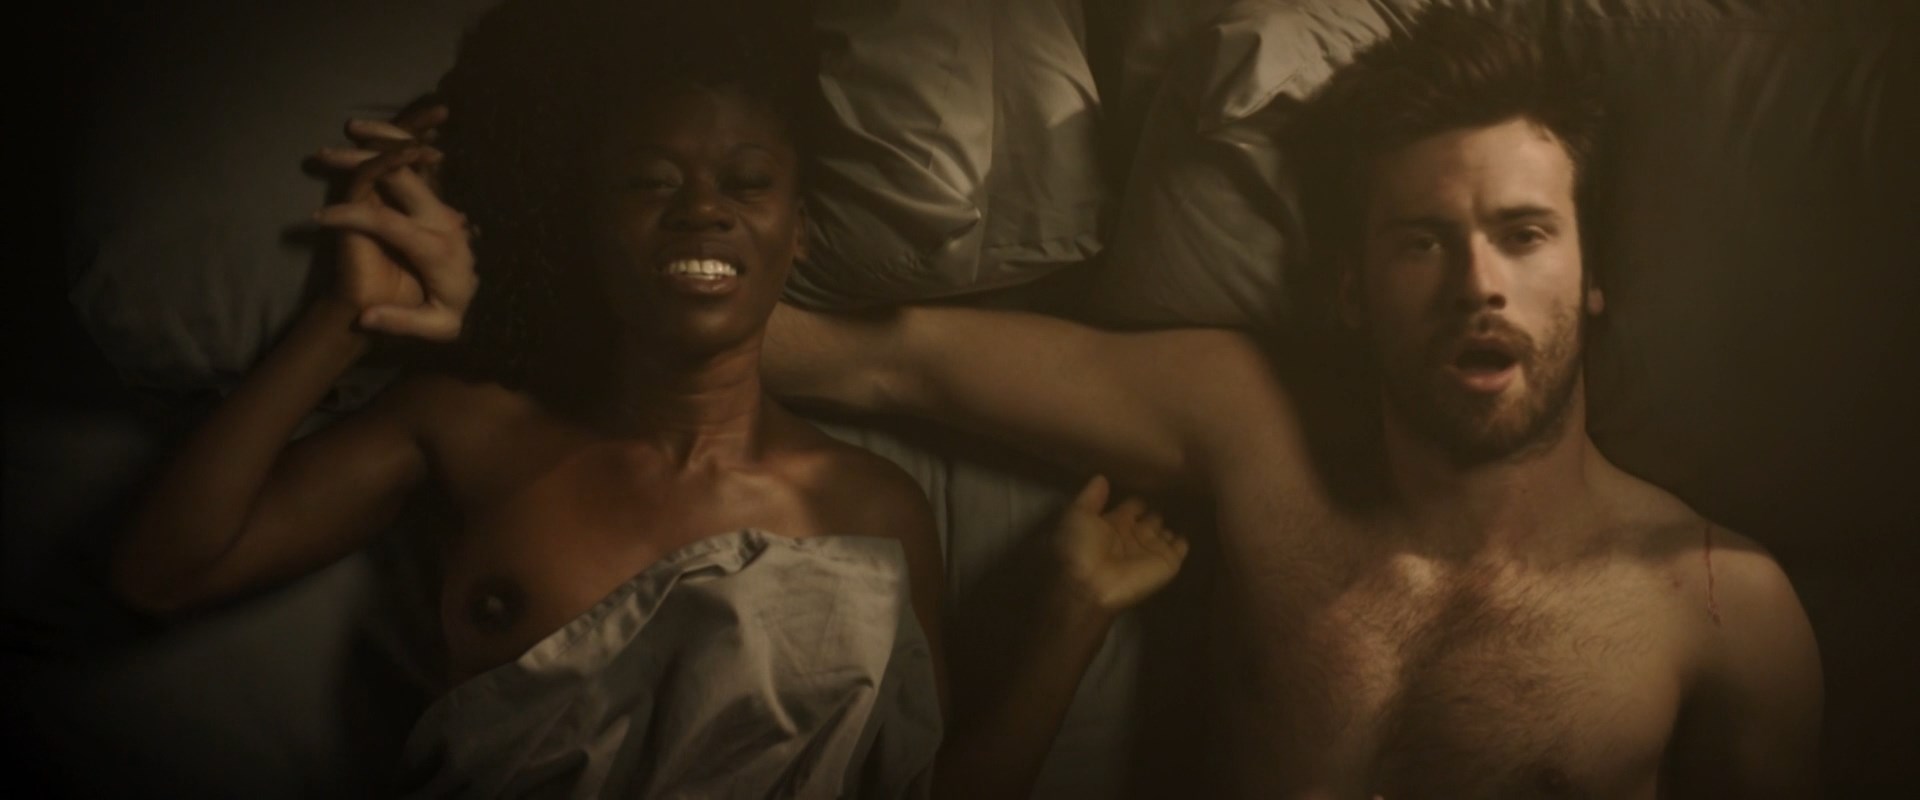 Akiya Henry nude - Macbeth (2018)